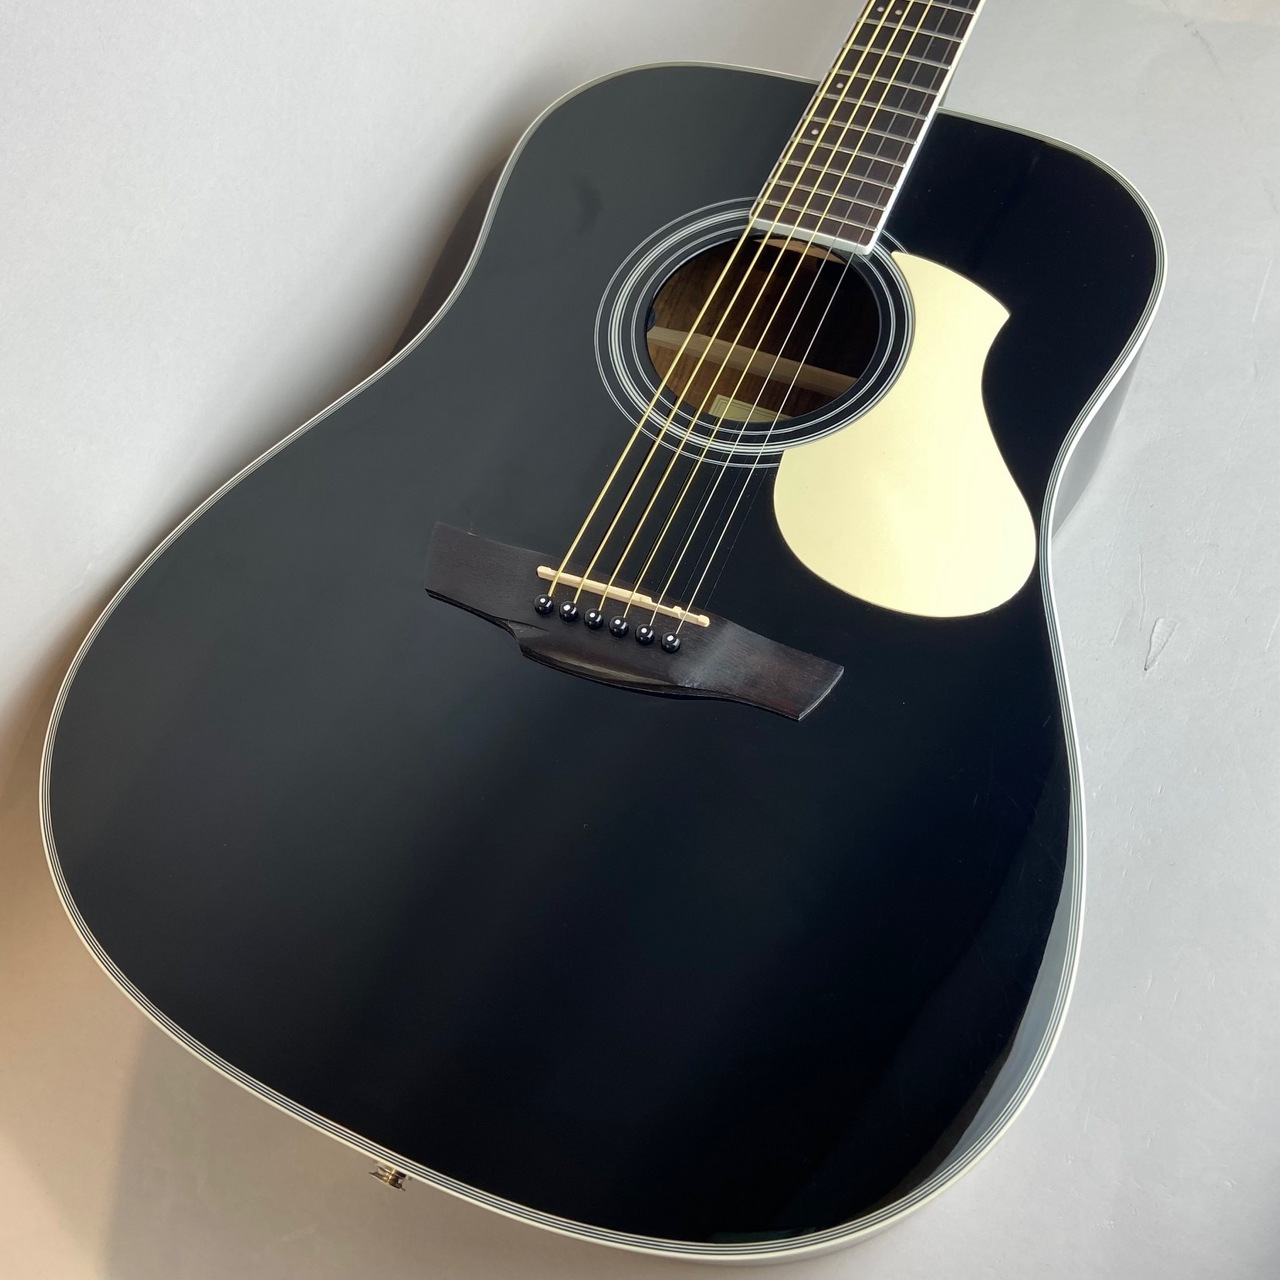 アコースティックギター James-450D-